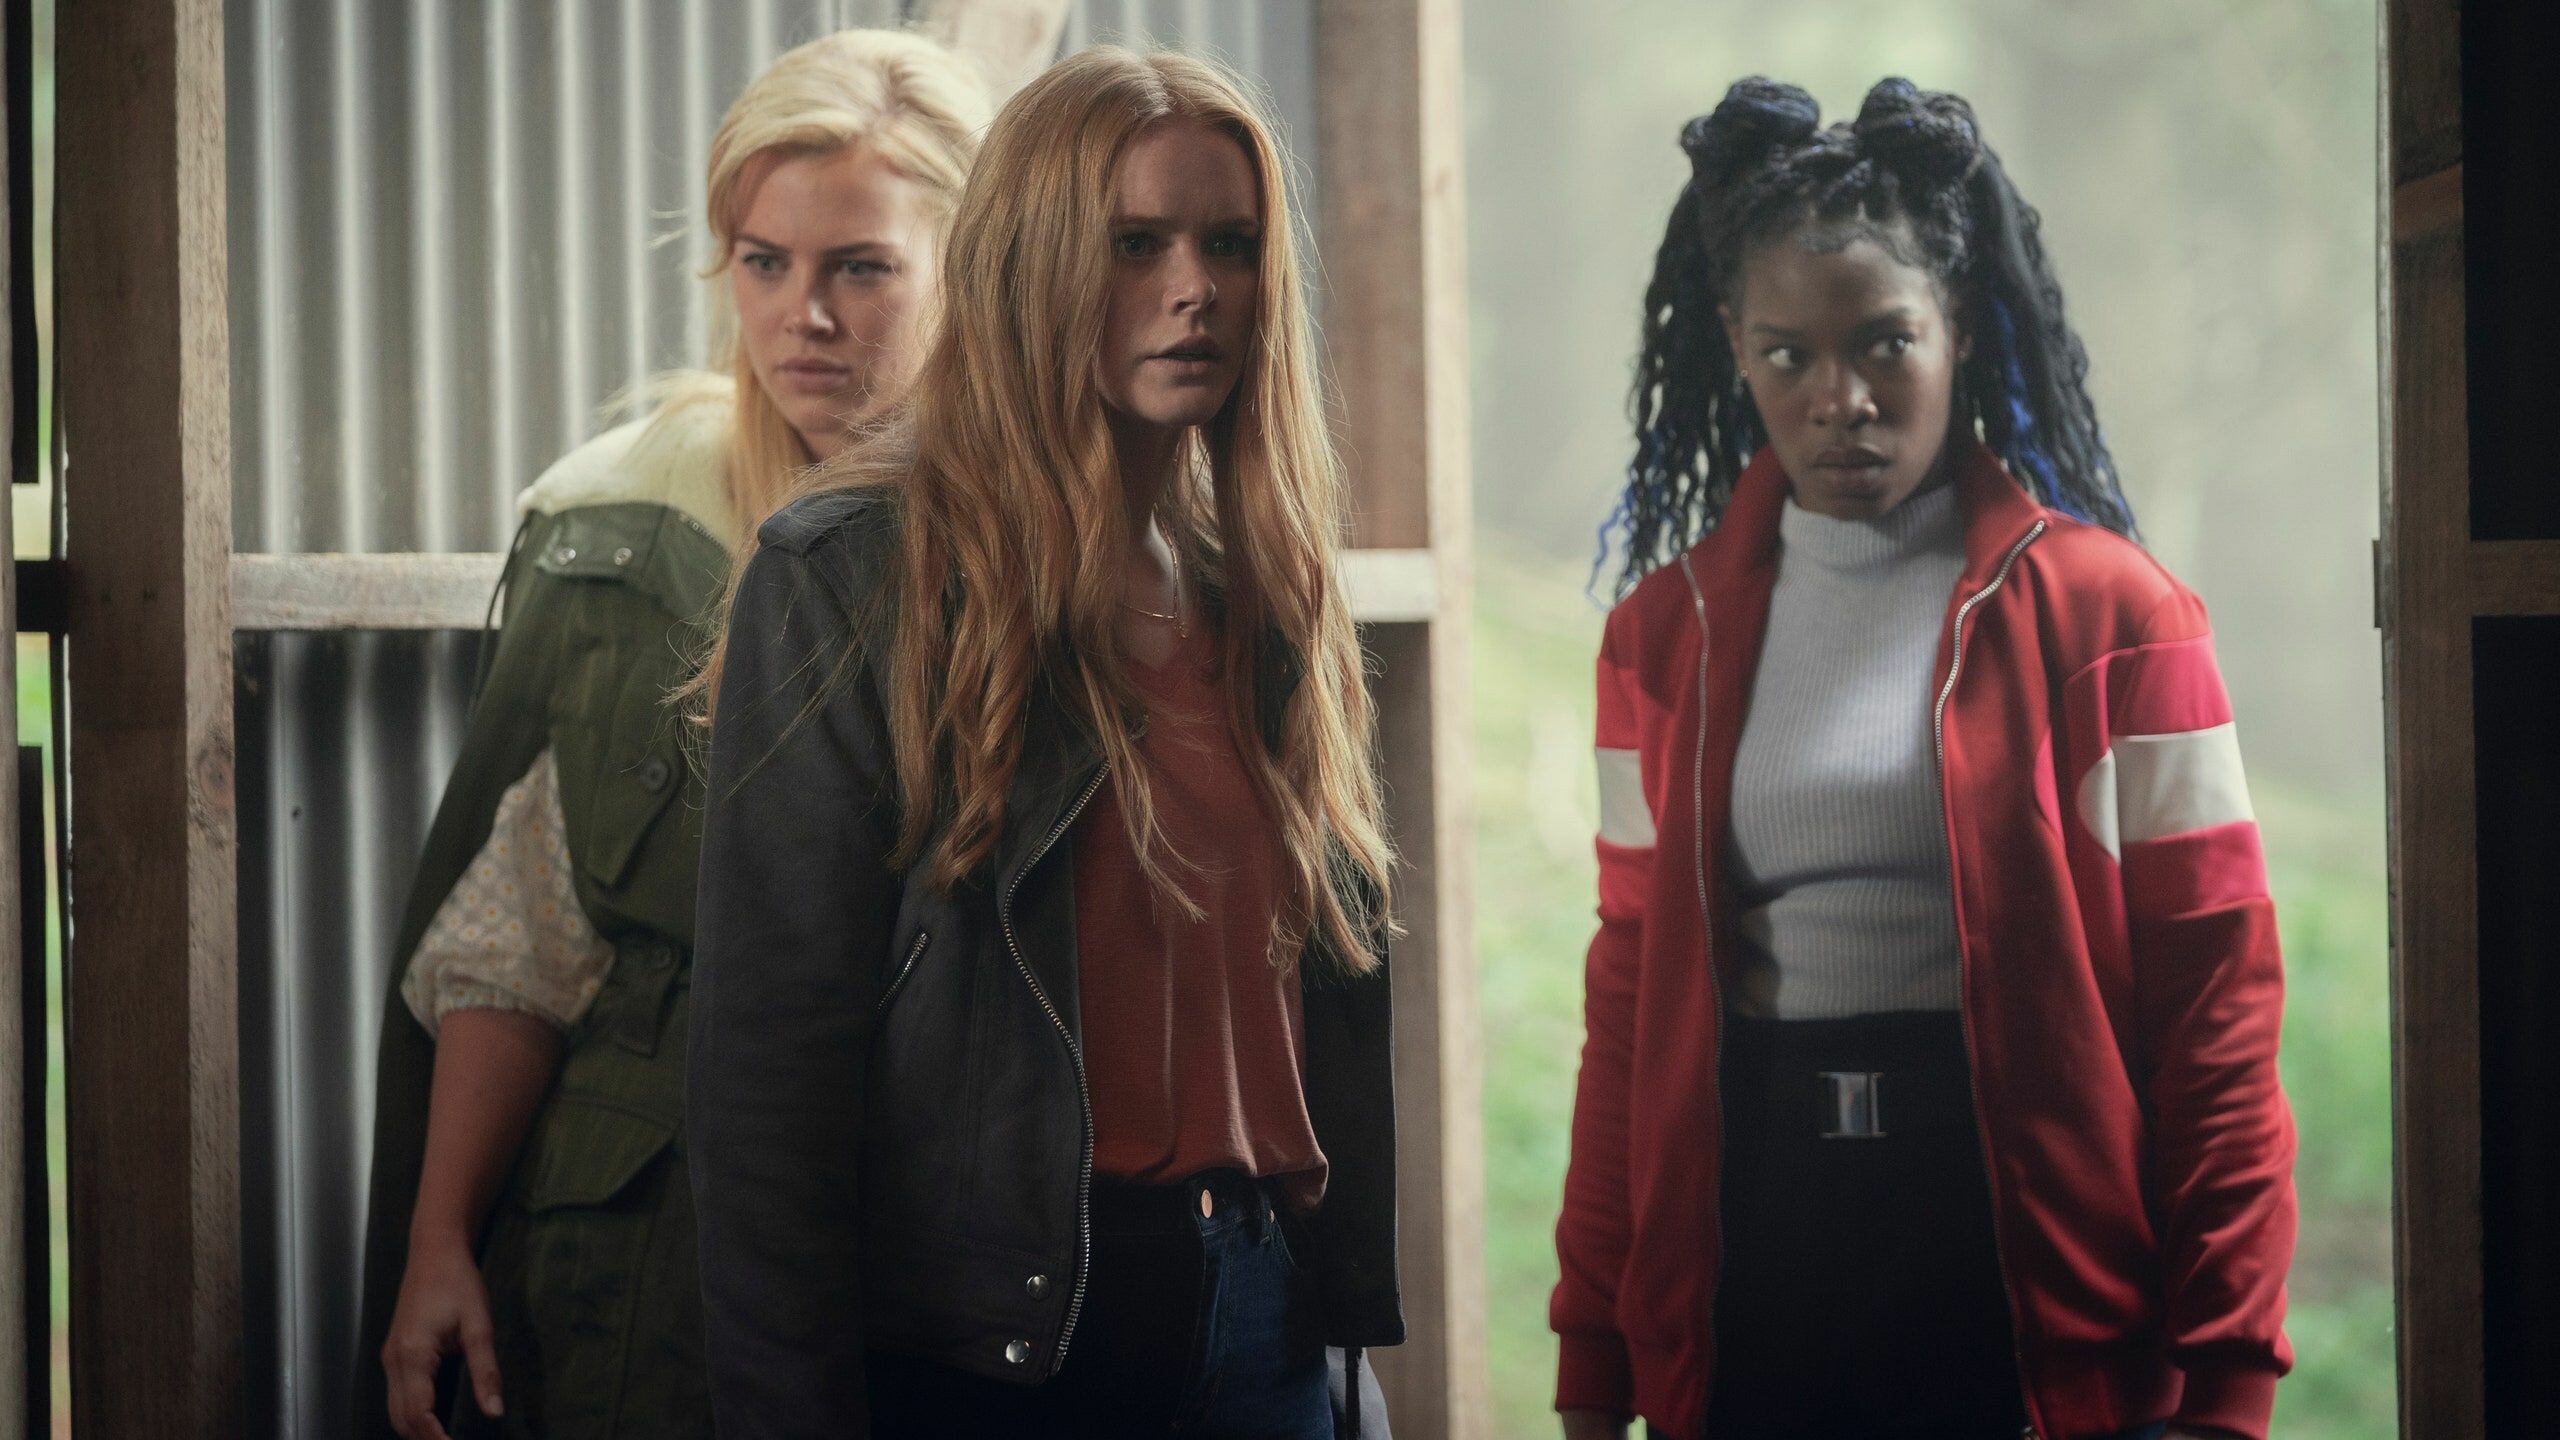 Fate: The Winx Saga: Abigail Cowen as Bloom, Hannah van der Westhuysen as Stella, Precious Mustapha as Aisha. 2560x1440 HD Background.